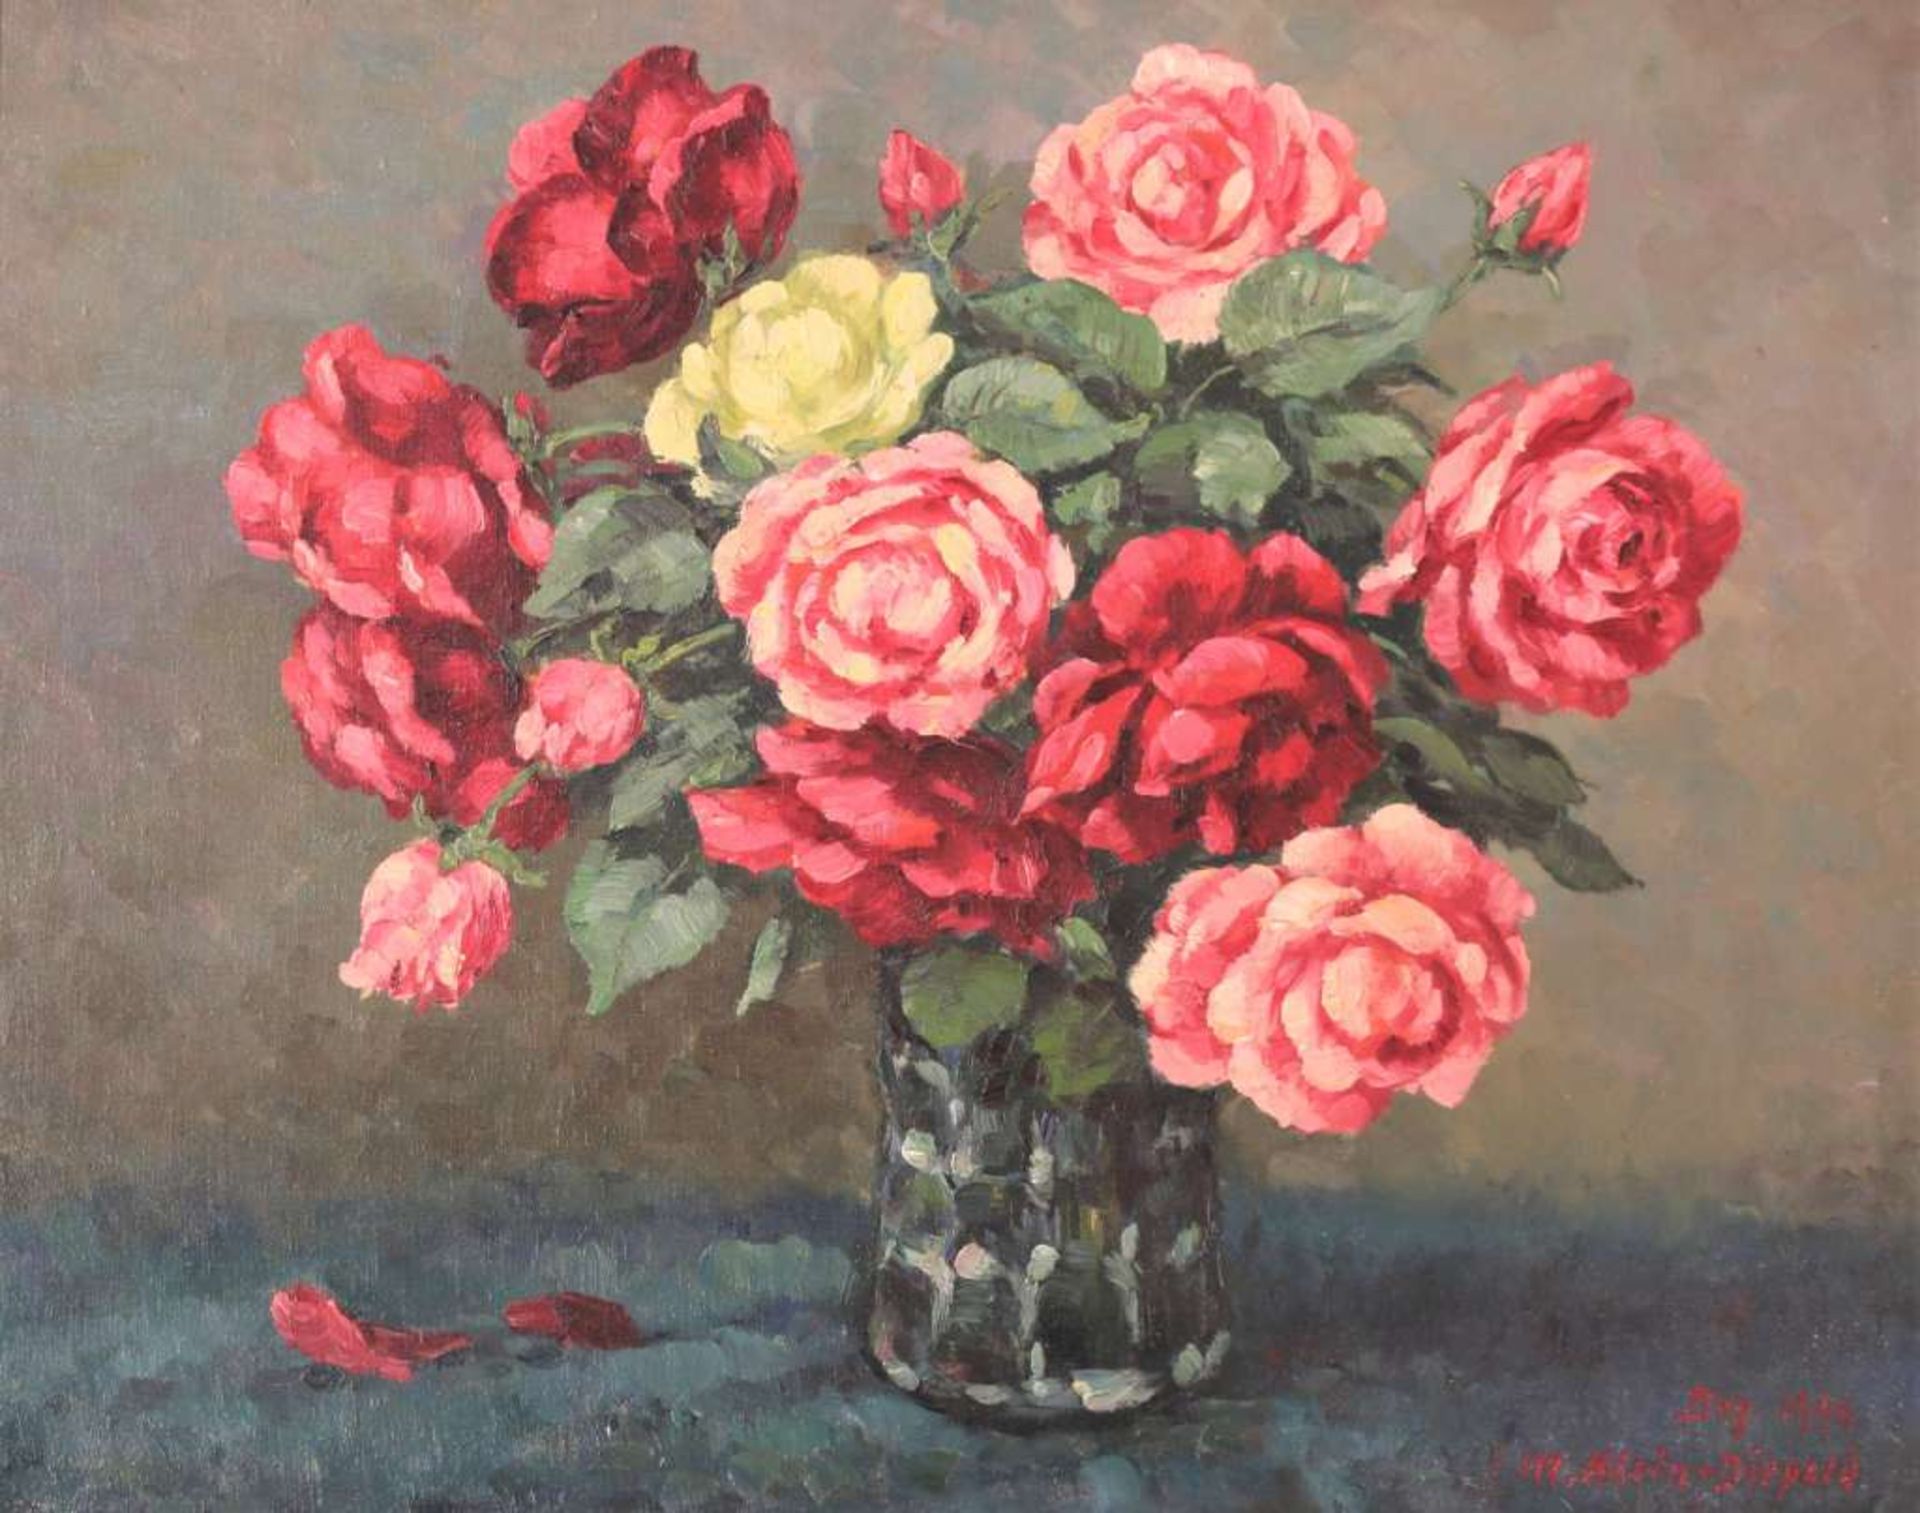 Maximilian KLEIN VON DIEPOLD (1873-1949), Stillleben mit in voller Blüte stehenden Rosen, Öl auf